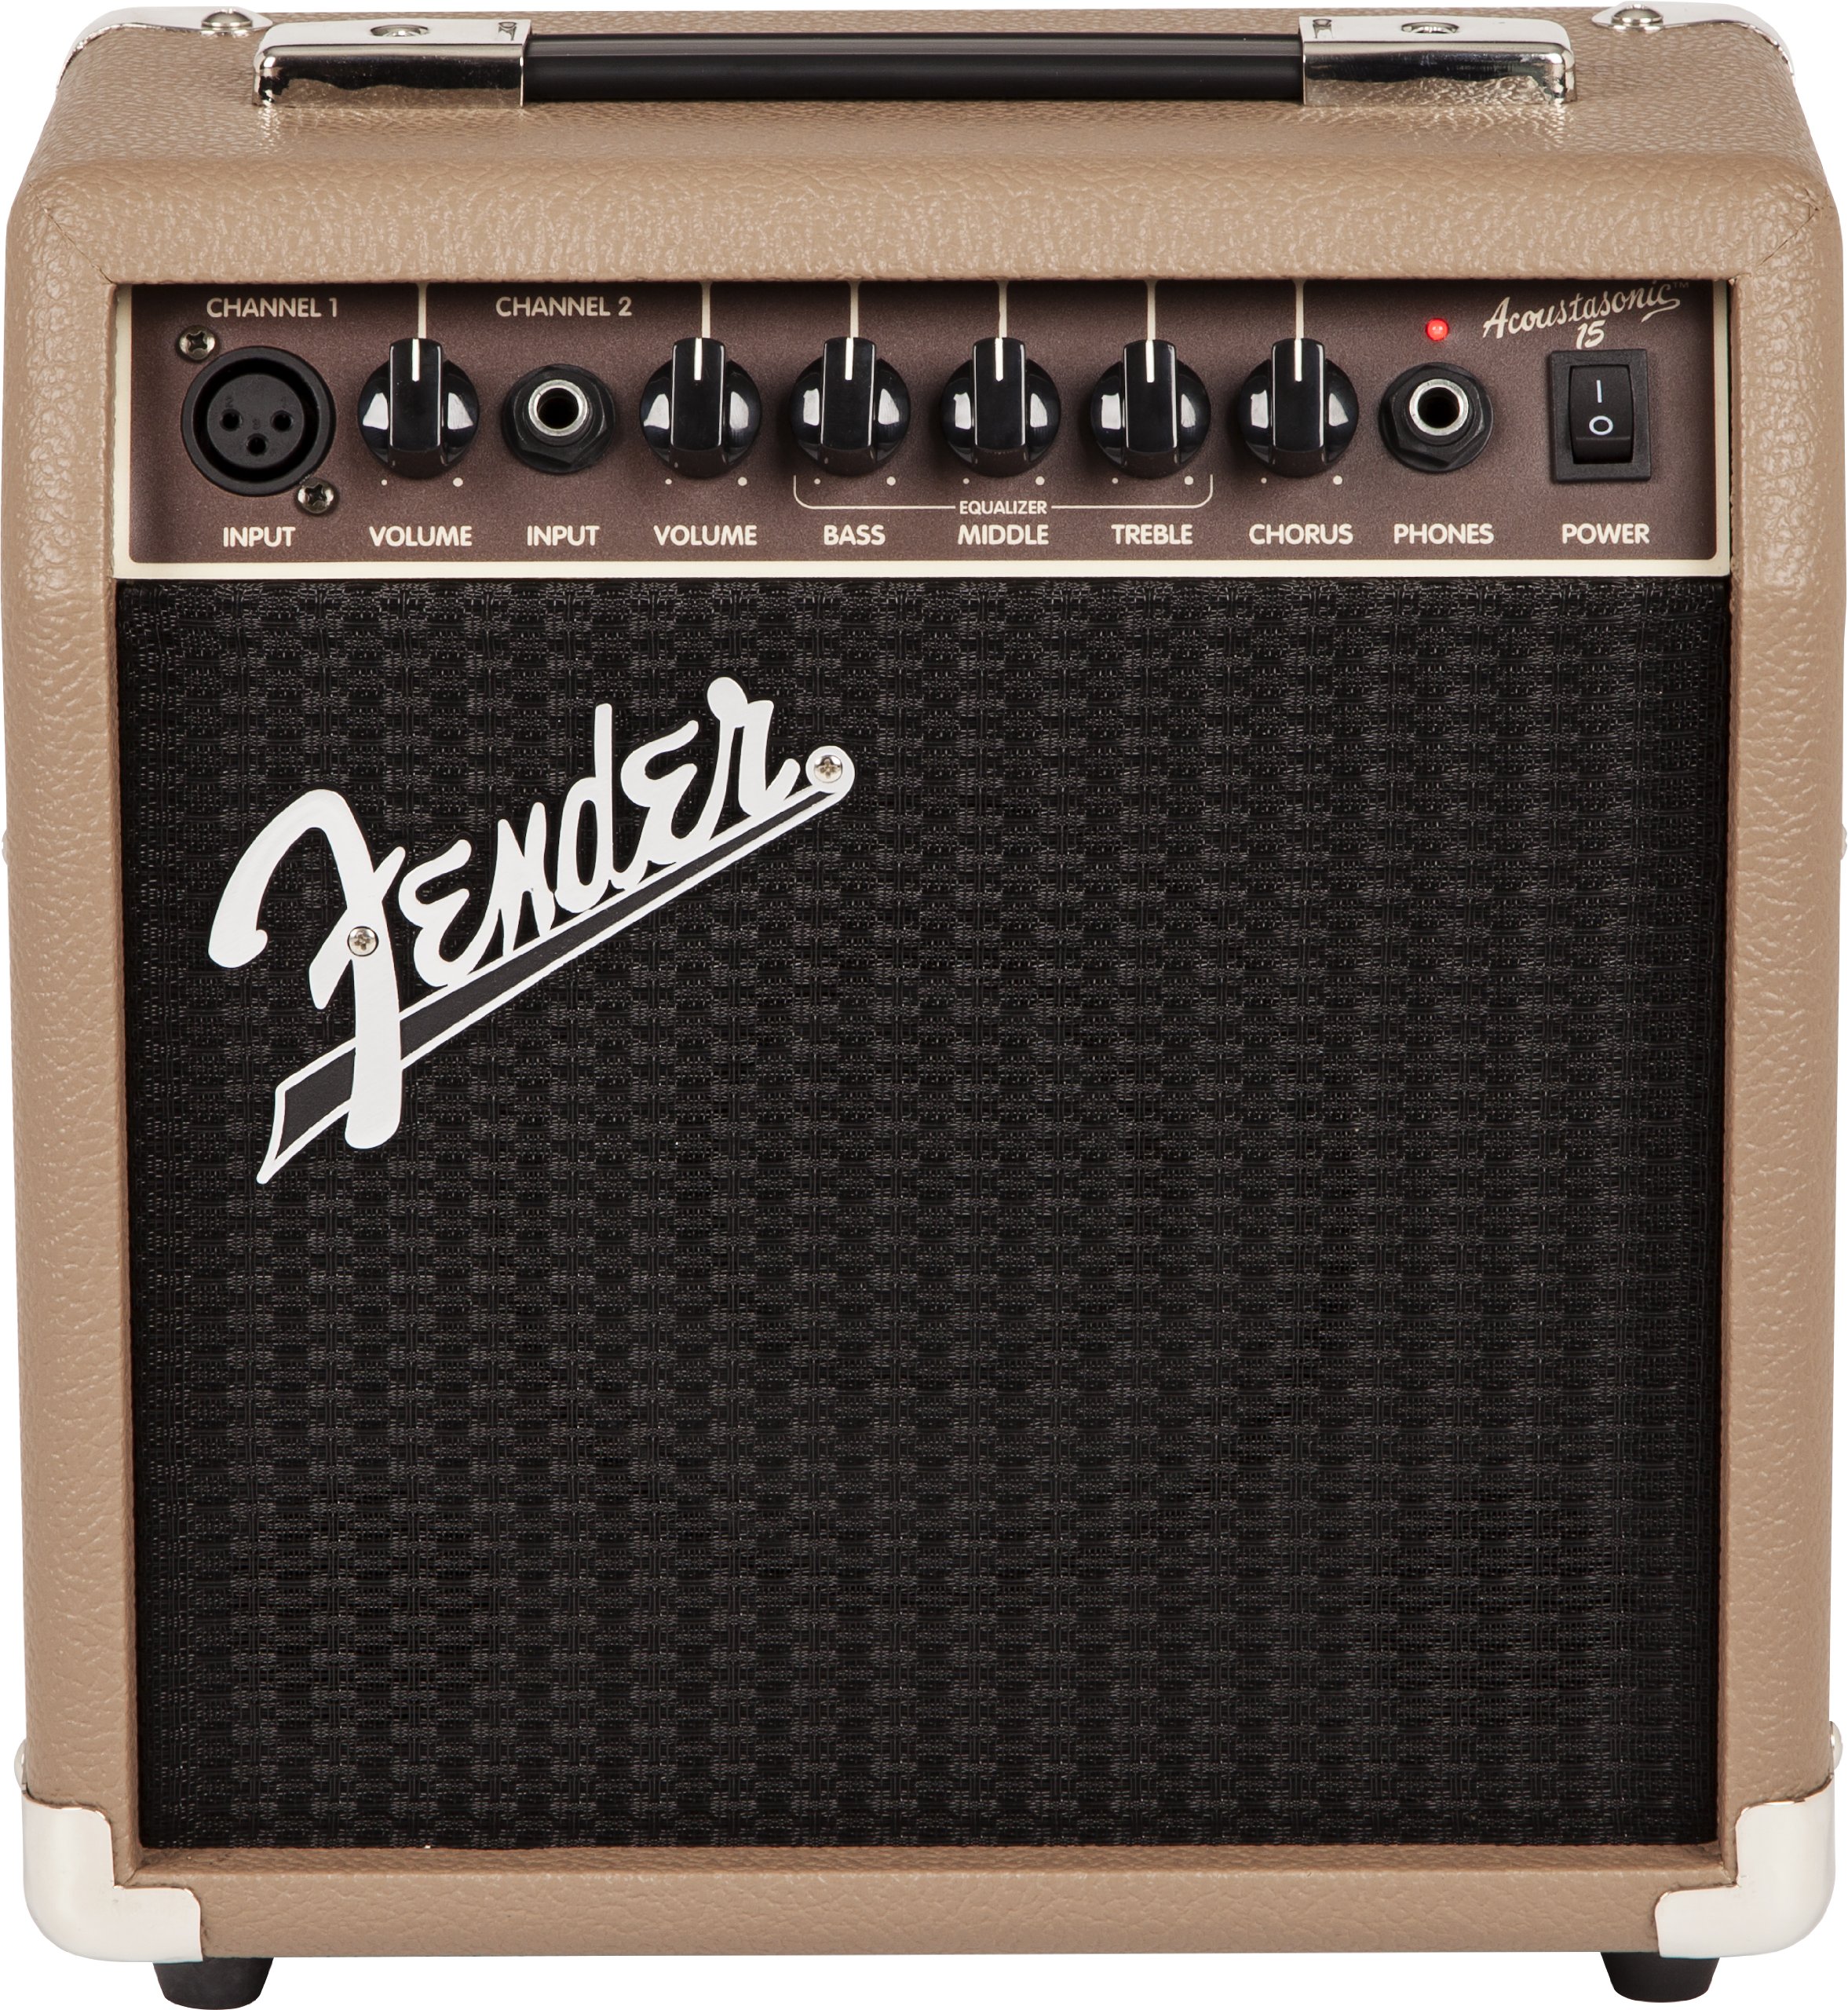 Fender Acoustasonic 15 Akustik-Combo-Verstärker